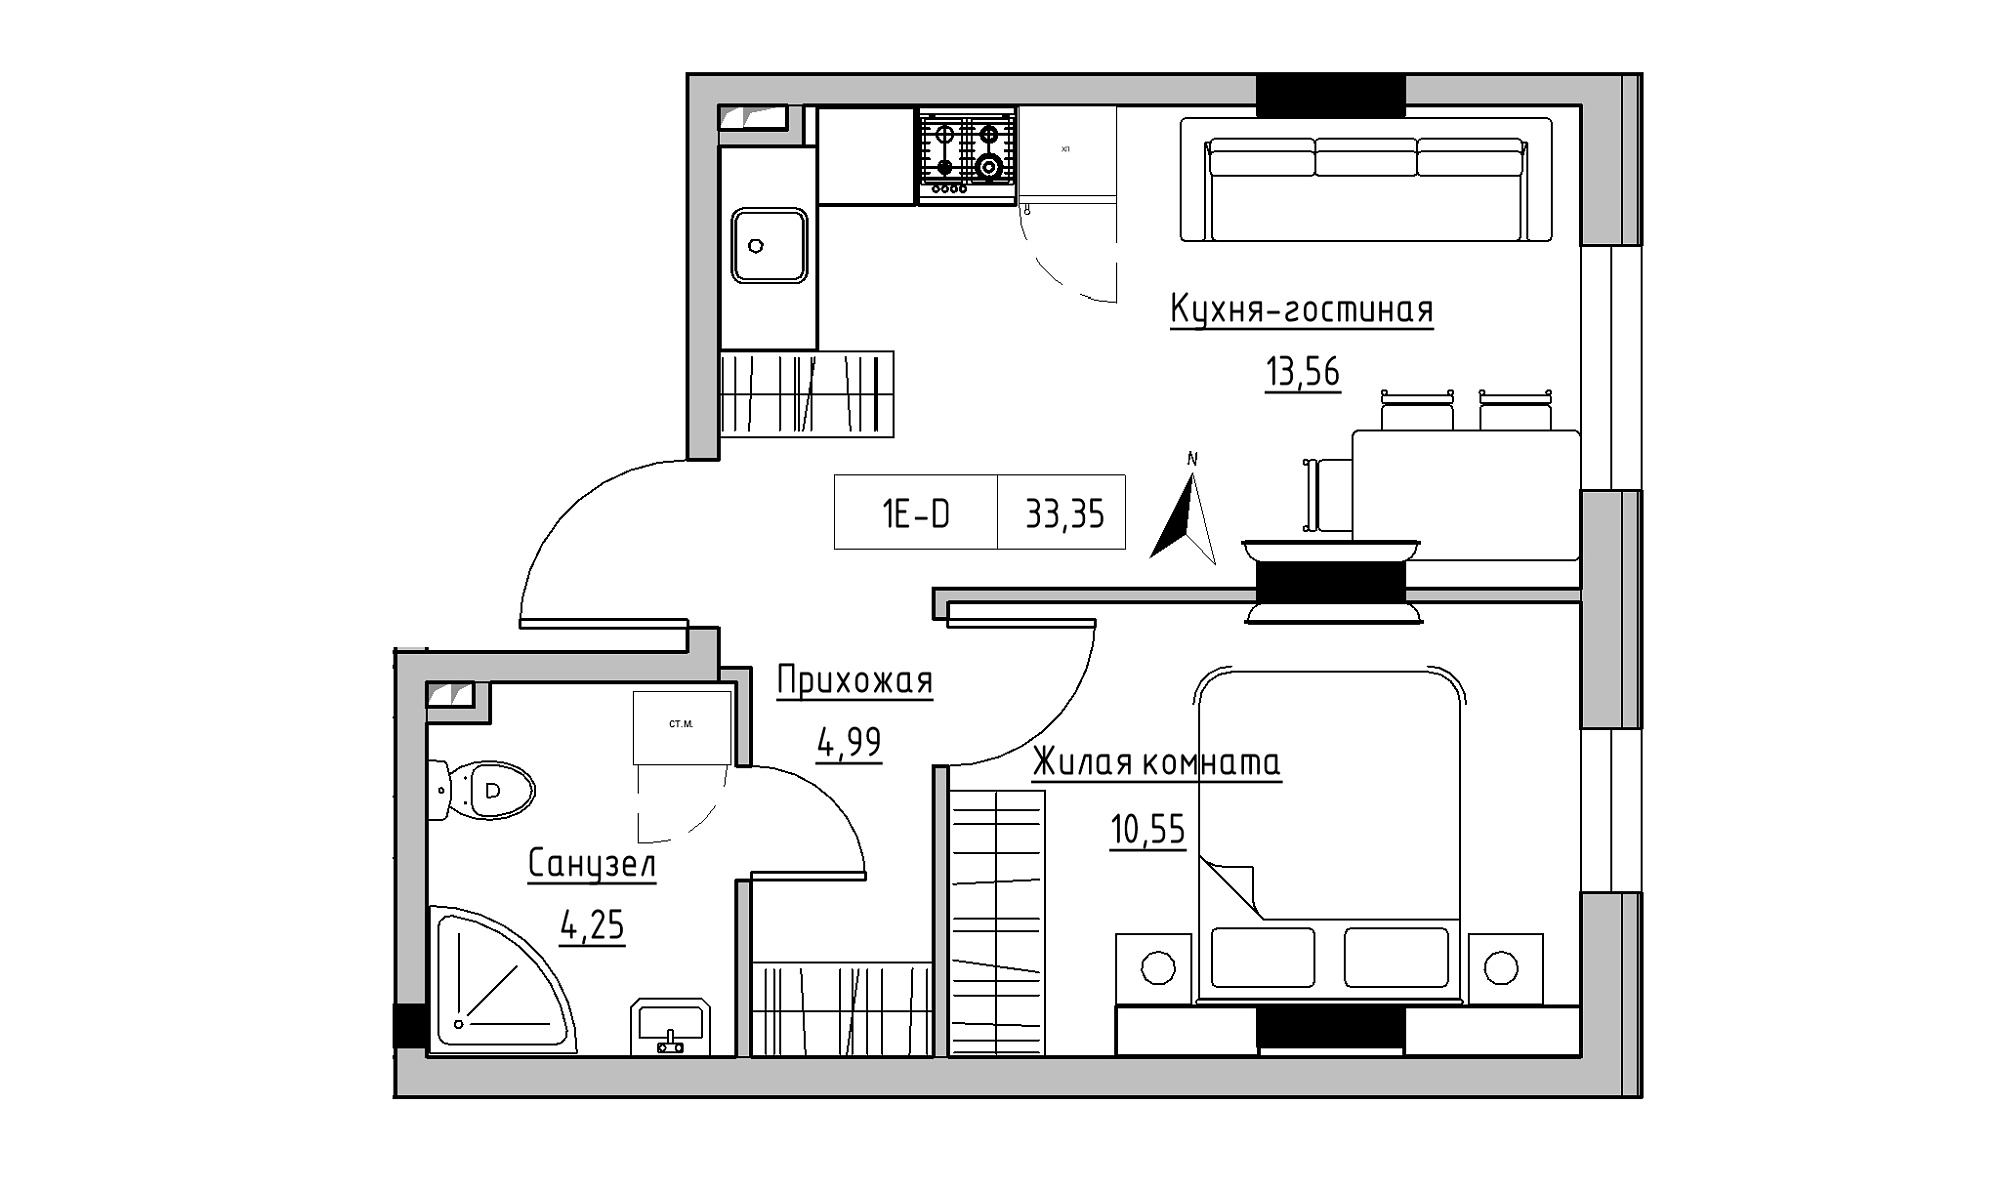 Планування 1-к квартира площею 33.35м2, KS-025-01/0002.